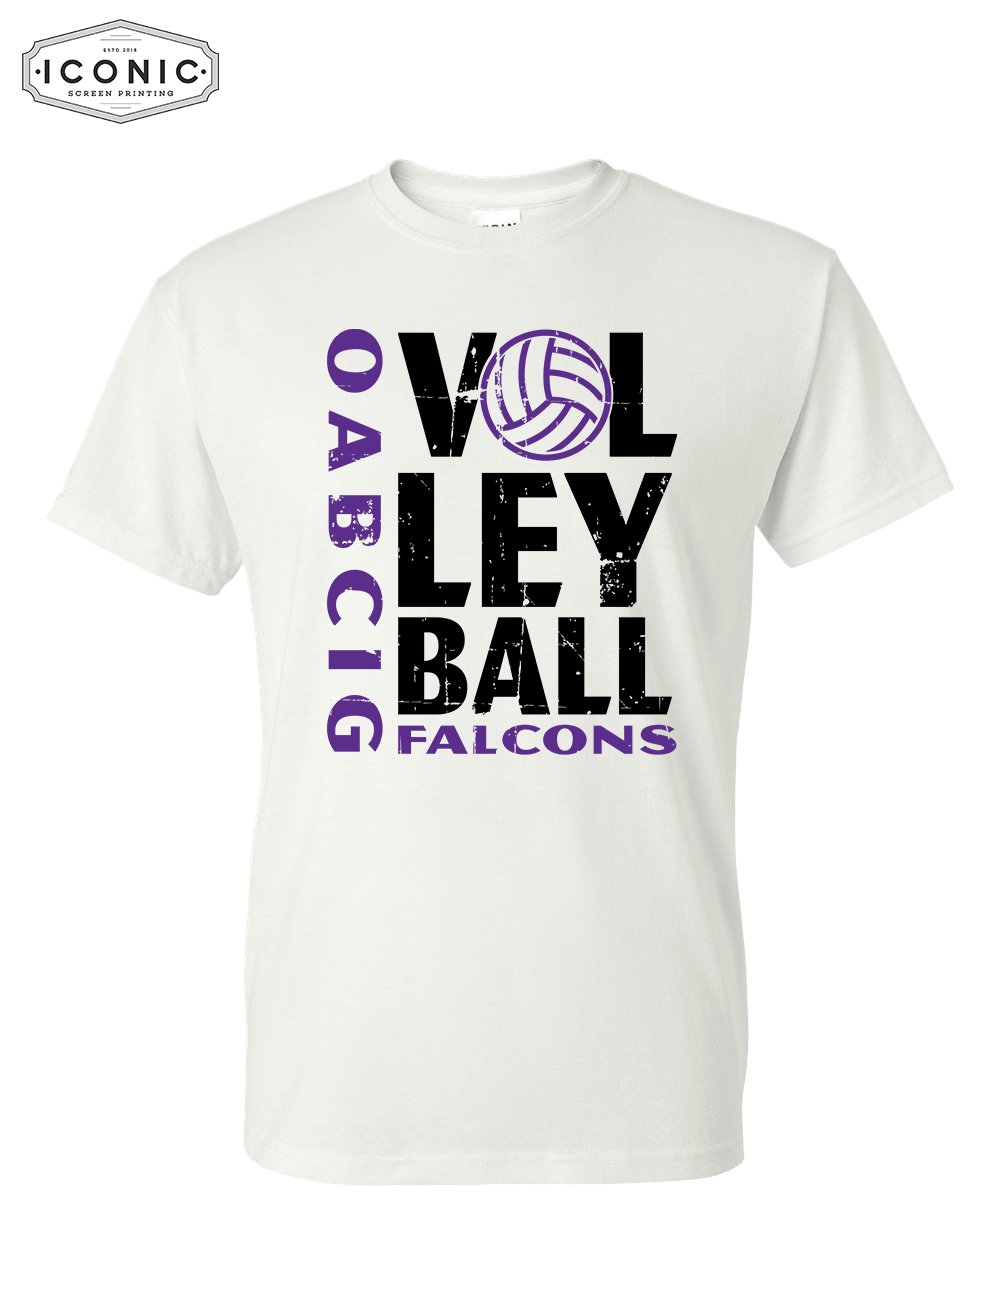 OA-BCIG Falcons Volleyball - DryBlend T-shirt